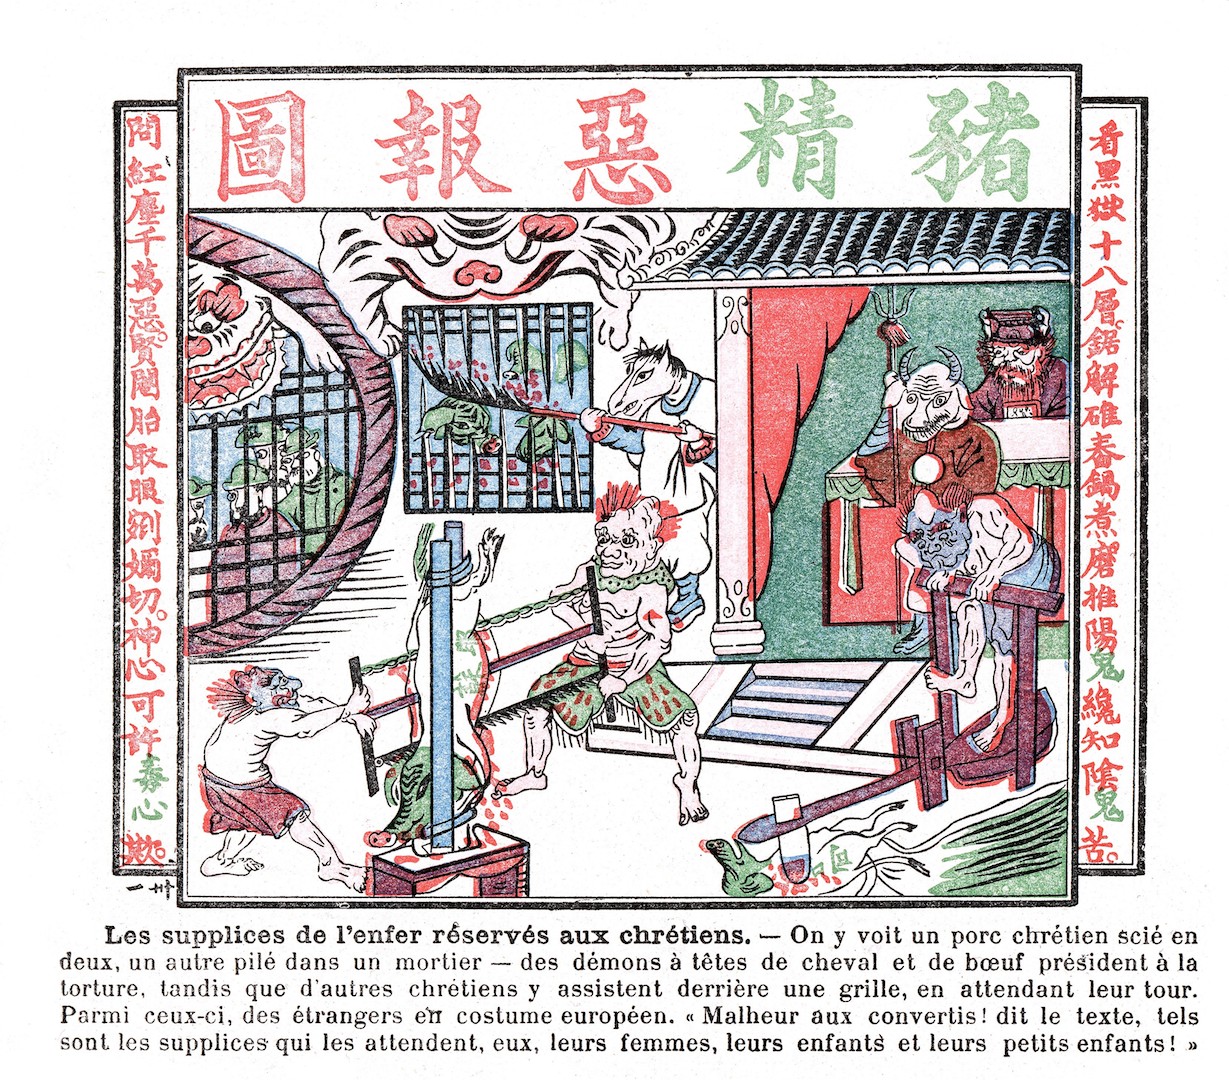 Extraite du "Bixie Jishi"《辟邪紀實》("Recueil de faits pour conjurer l’hétérodoxie"), un ouvrage antichrétien publié pour la première fois en 1861, cette illustration intitulée "Les terribles châtiments du porc incarné [Jésus]" montre un cochon représentant Jésus en train d’être coupé en deux. Le décor et les personnages évoquent les 18 niveaux de l’enfer des mythologies bouddhiste et taoïste. Jésus était souvent représenté en porc dans l’iconographie pamphlétaire de l’époque en raison de l’homophonie entre les deux derniers caractères du mot chinois "tianzhujiao" (天主教) pour catholicisme et zhujiao (豬叫) pour "grouinement du porc", dont seuls les tons diffèrent. (Crédits : AFP)